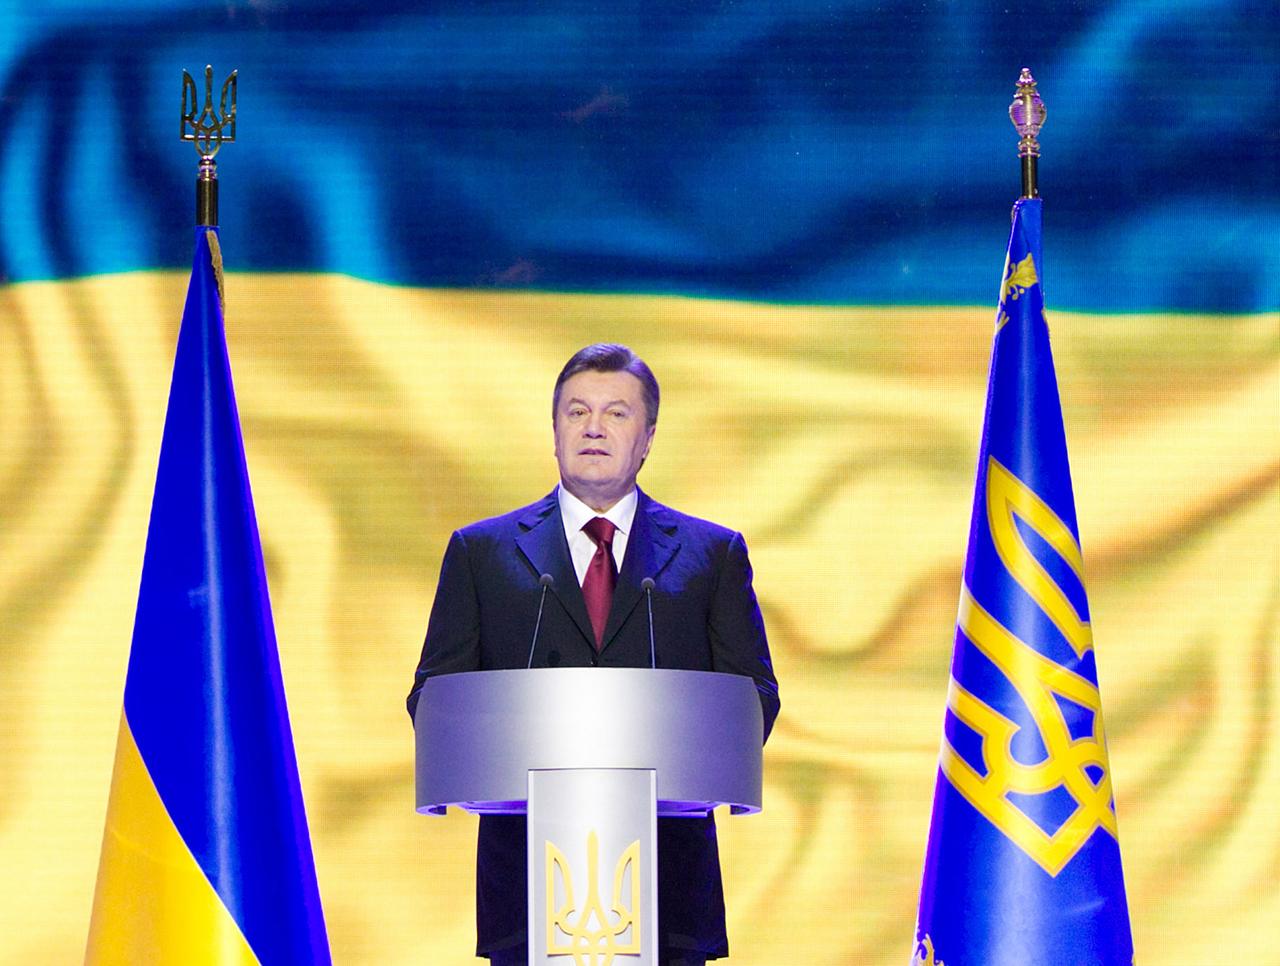 Der ukrainischen Präsident Viktor Janukowitsch steht flankiert von zwei blau-gelben Fahnen an einem Rednerpult.